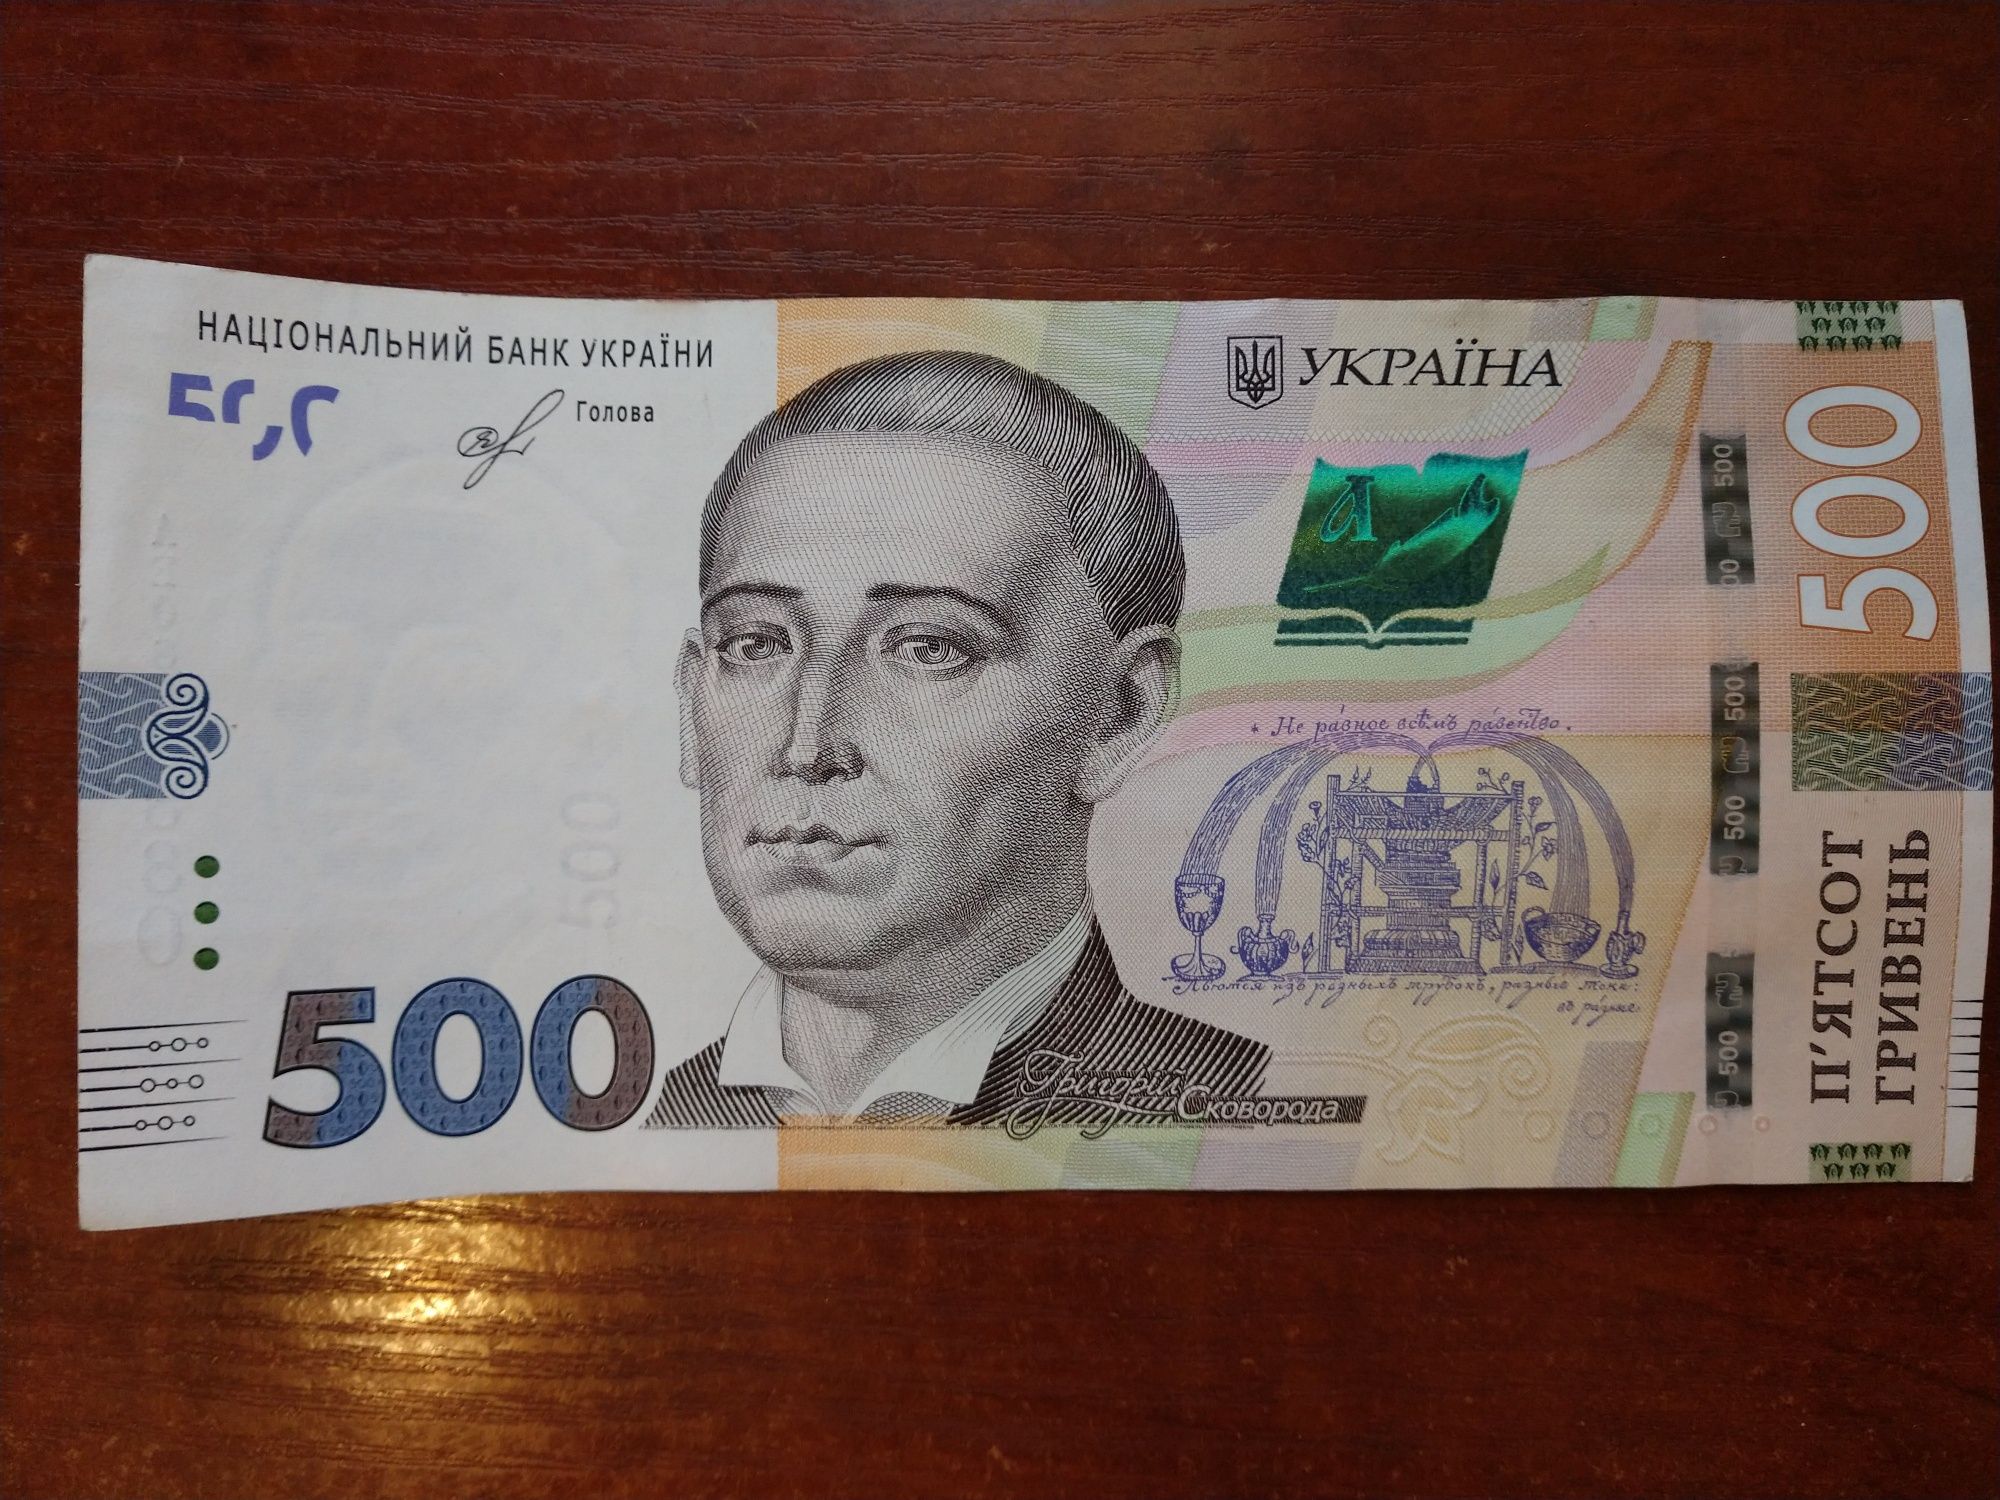 Банкнота 500 гривен номер радар 0888880